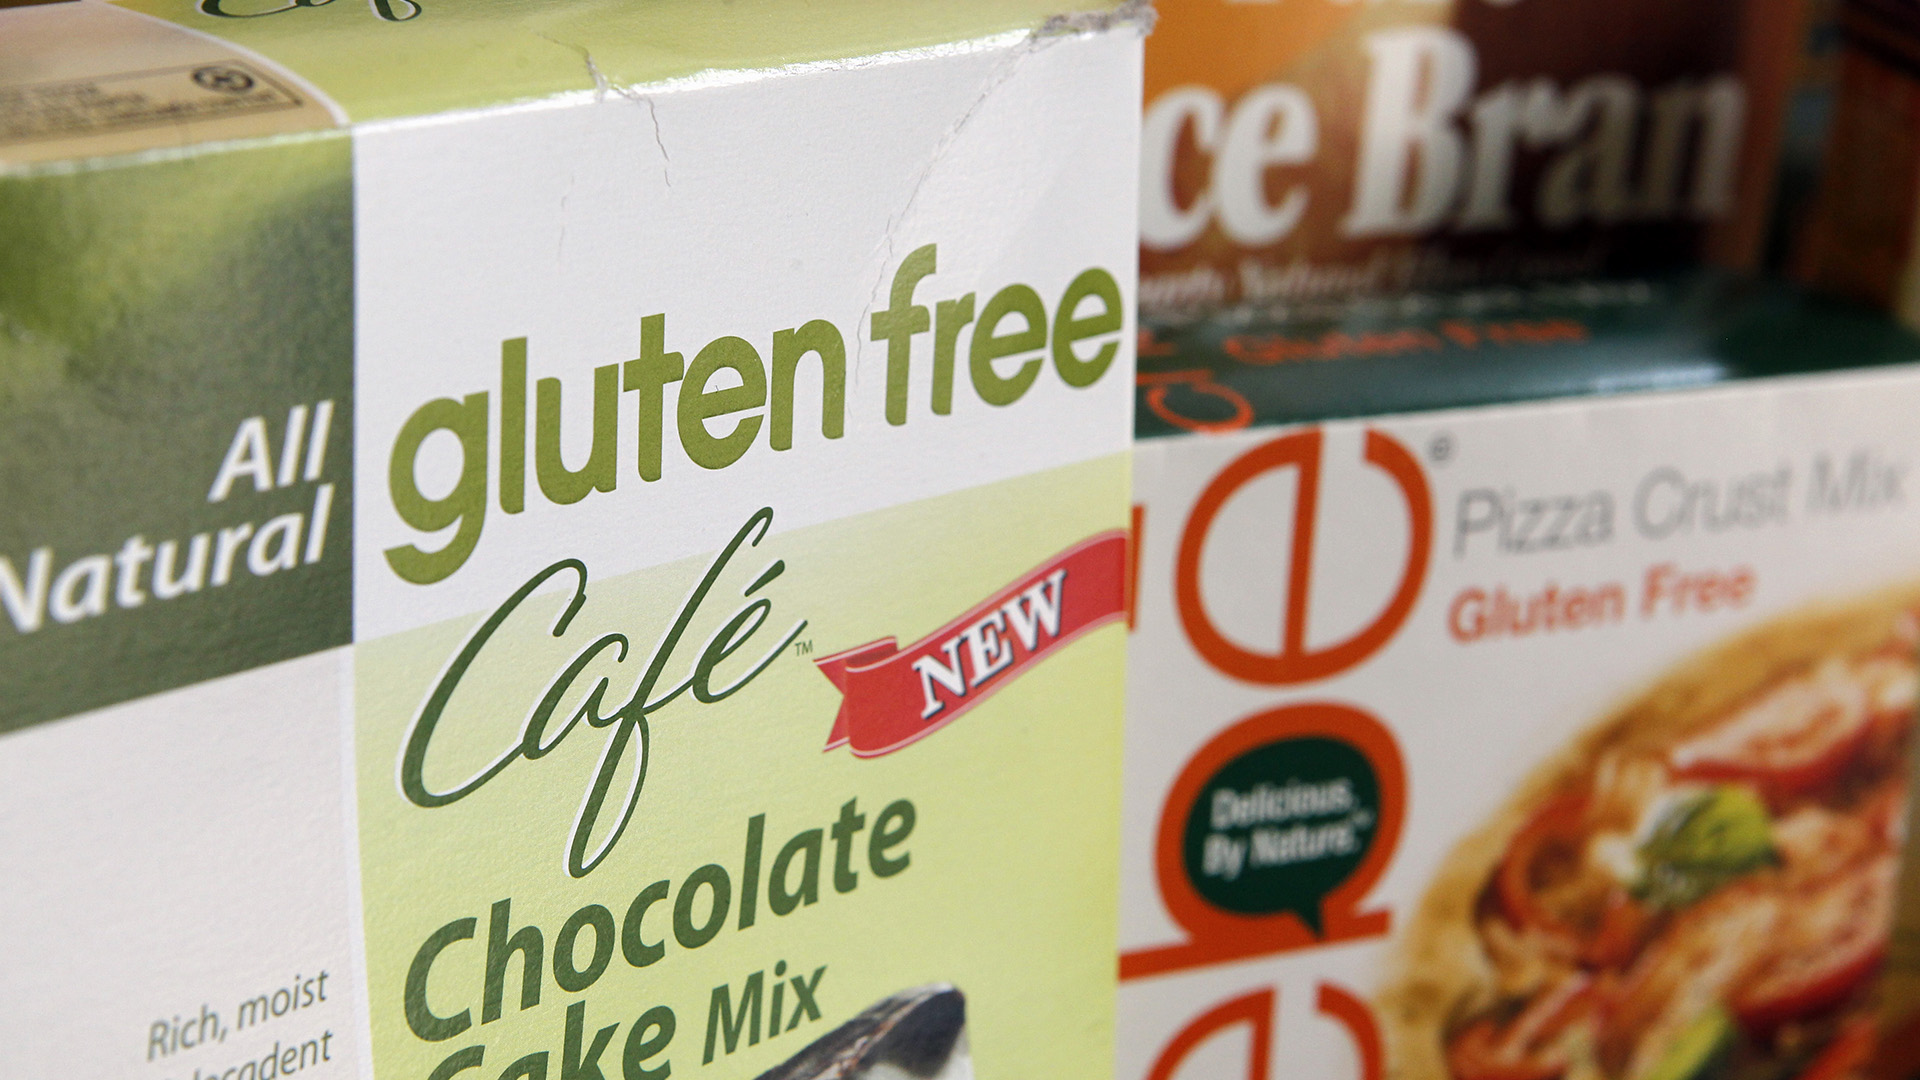 Una simple pastilla puede acabar con los síntomas de la intolerancia al gluten